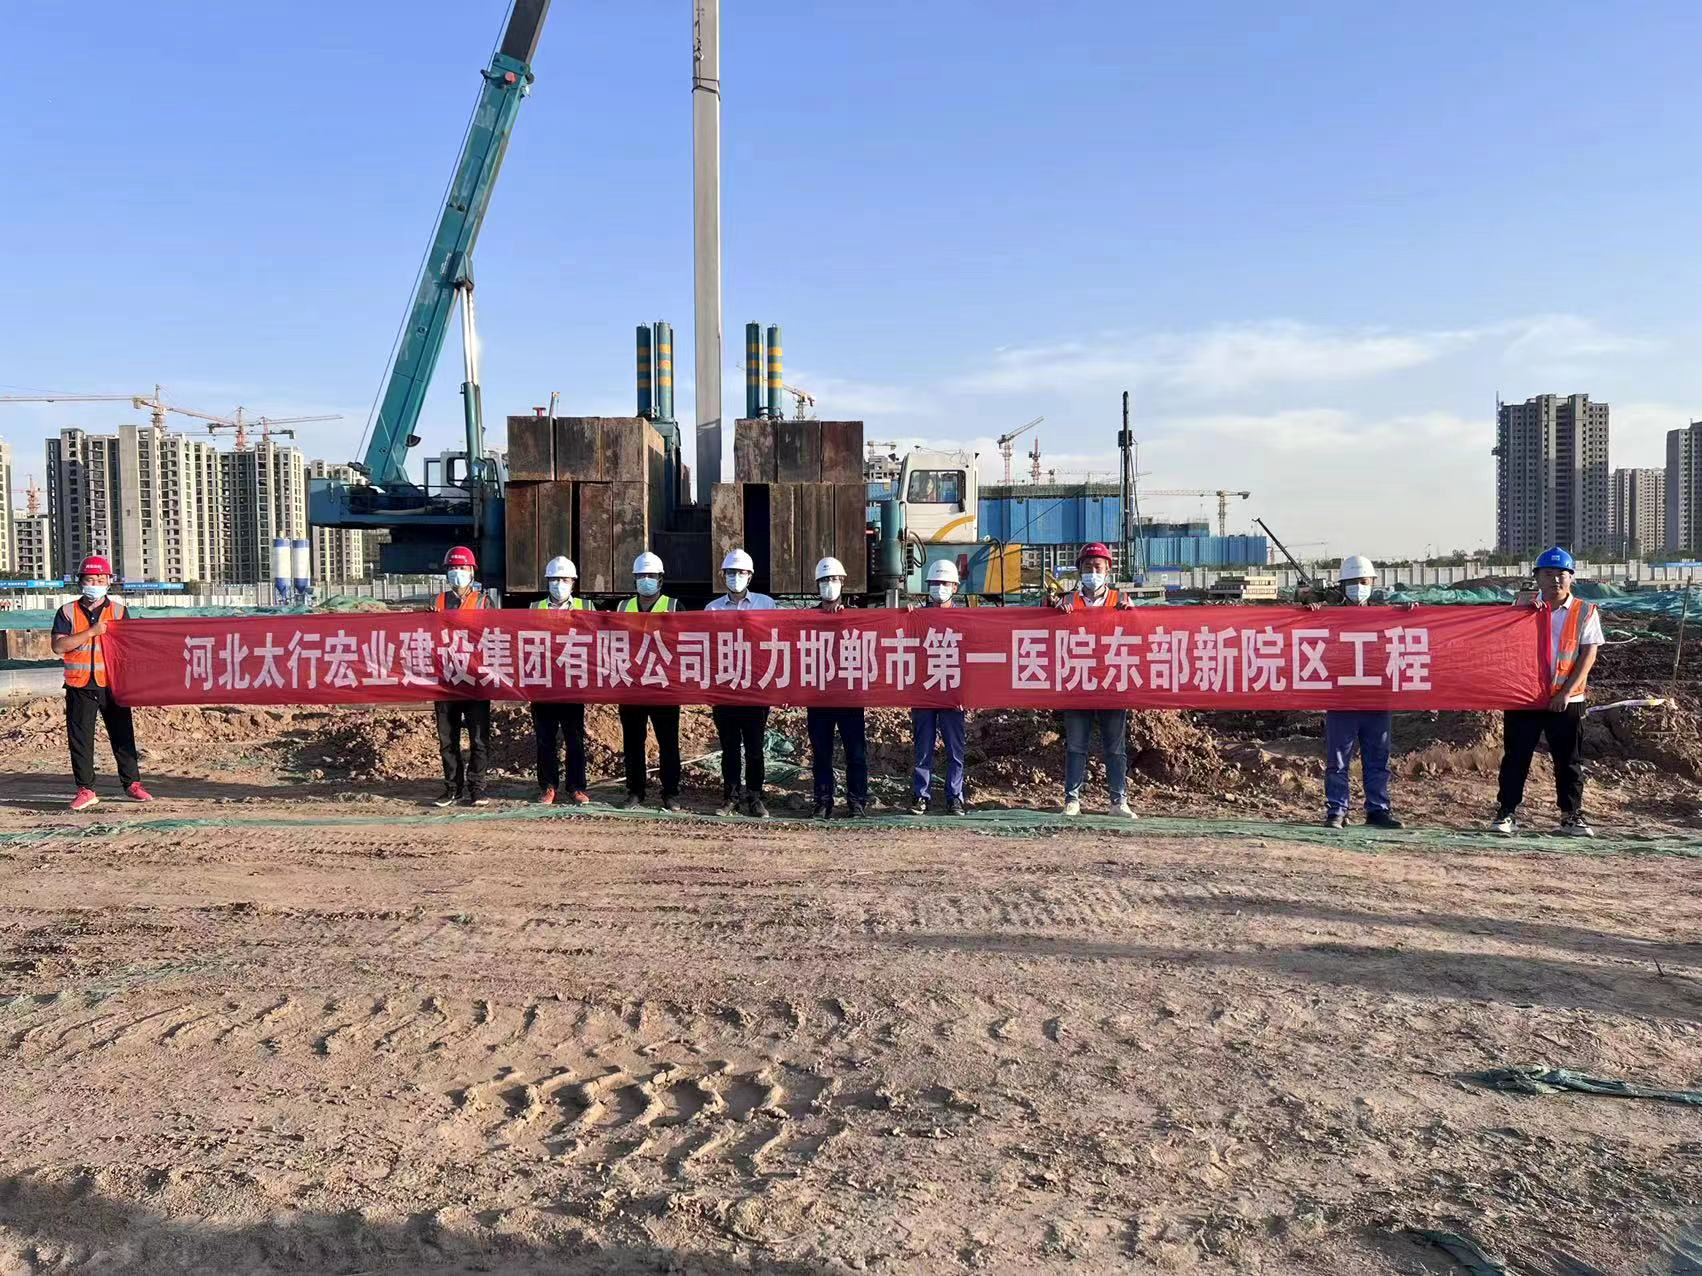 邯郸市第一医院东部新院区医疗区域建设项目